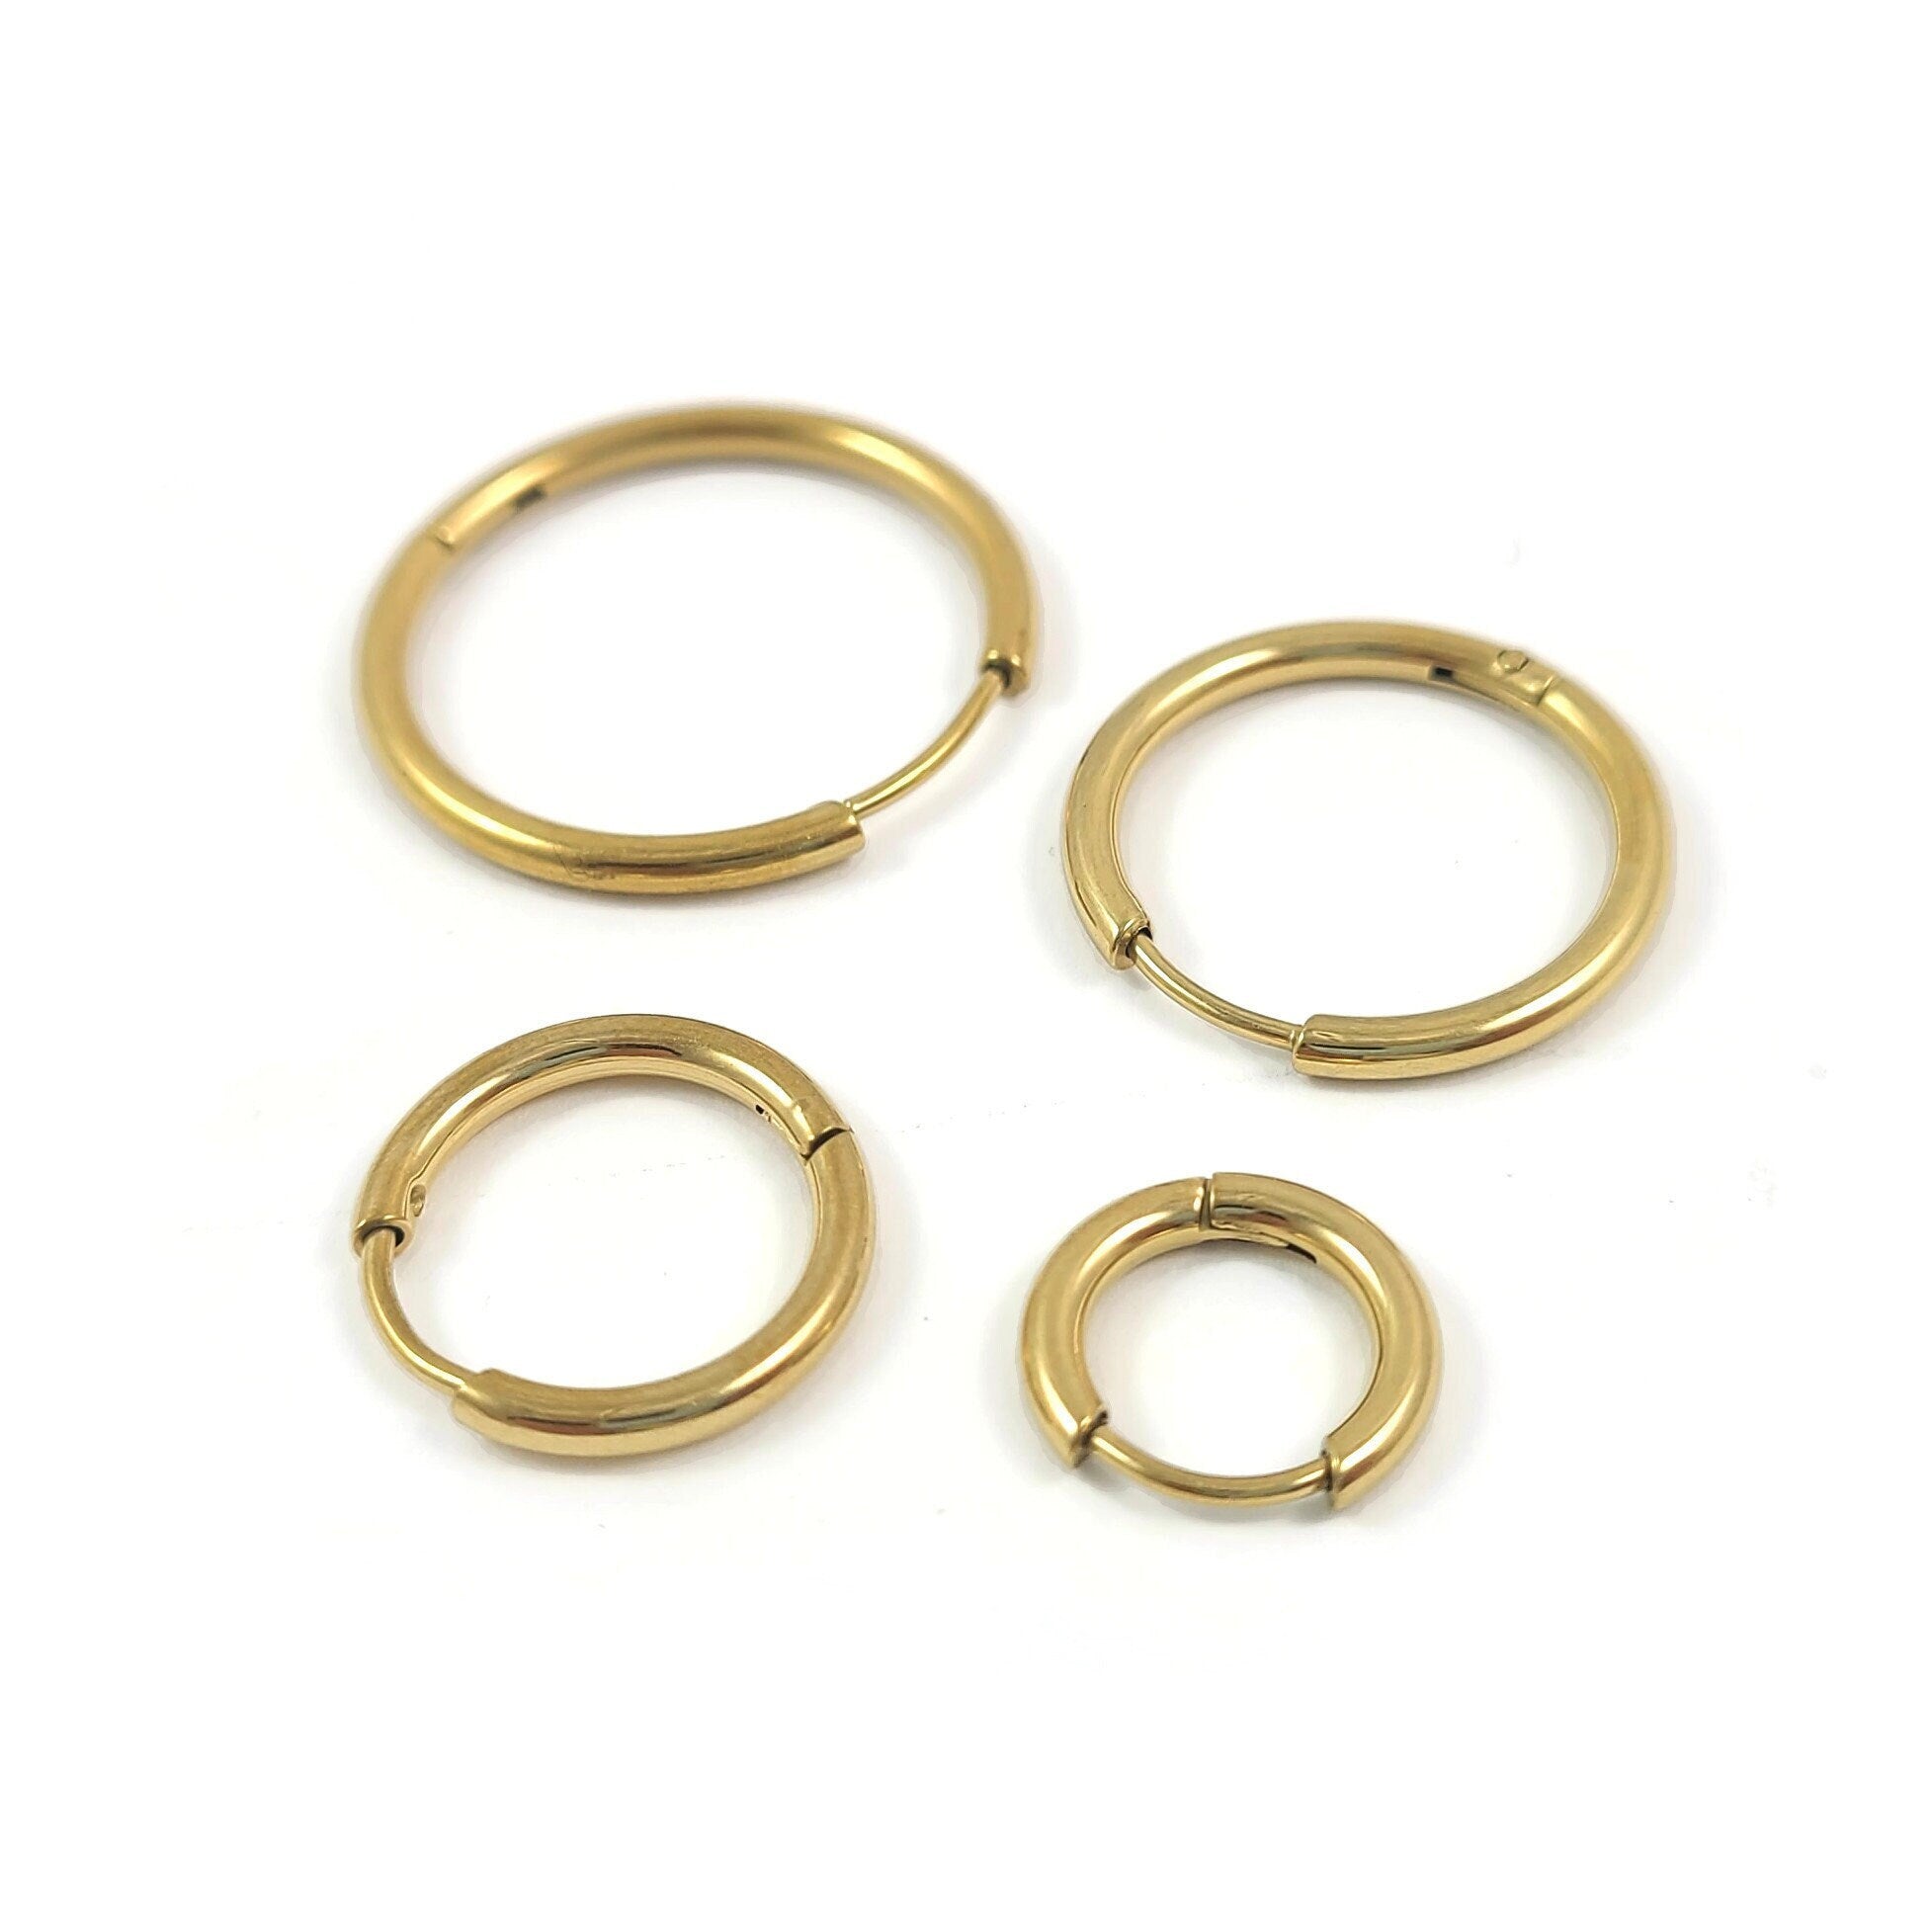 Minimalist Hoop Earring latch back Lever-backs Ear Hooks 14k Gold Filled hypoallergenic  earrings T-287